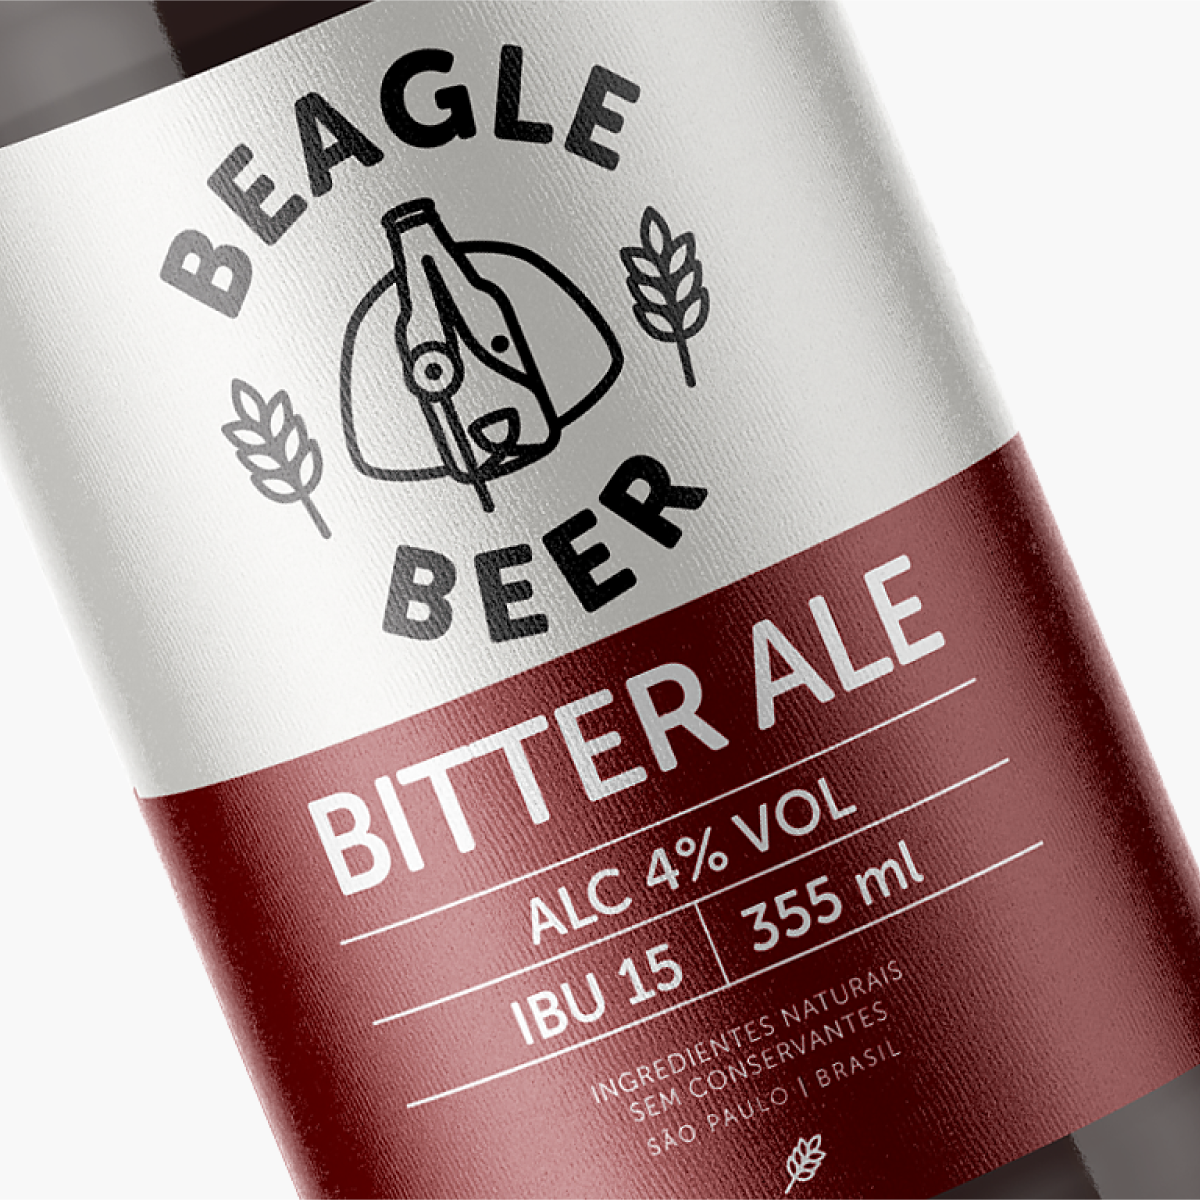 Beagle Beer